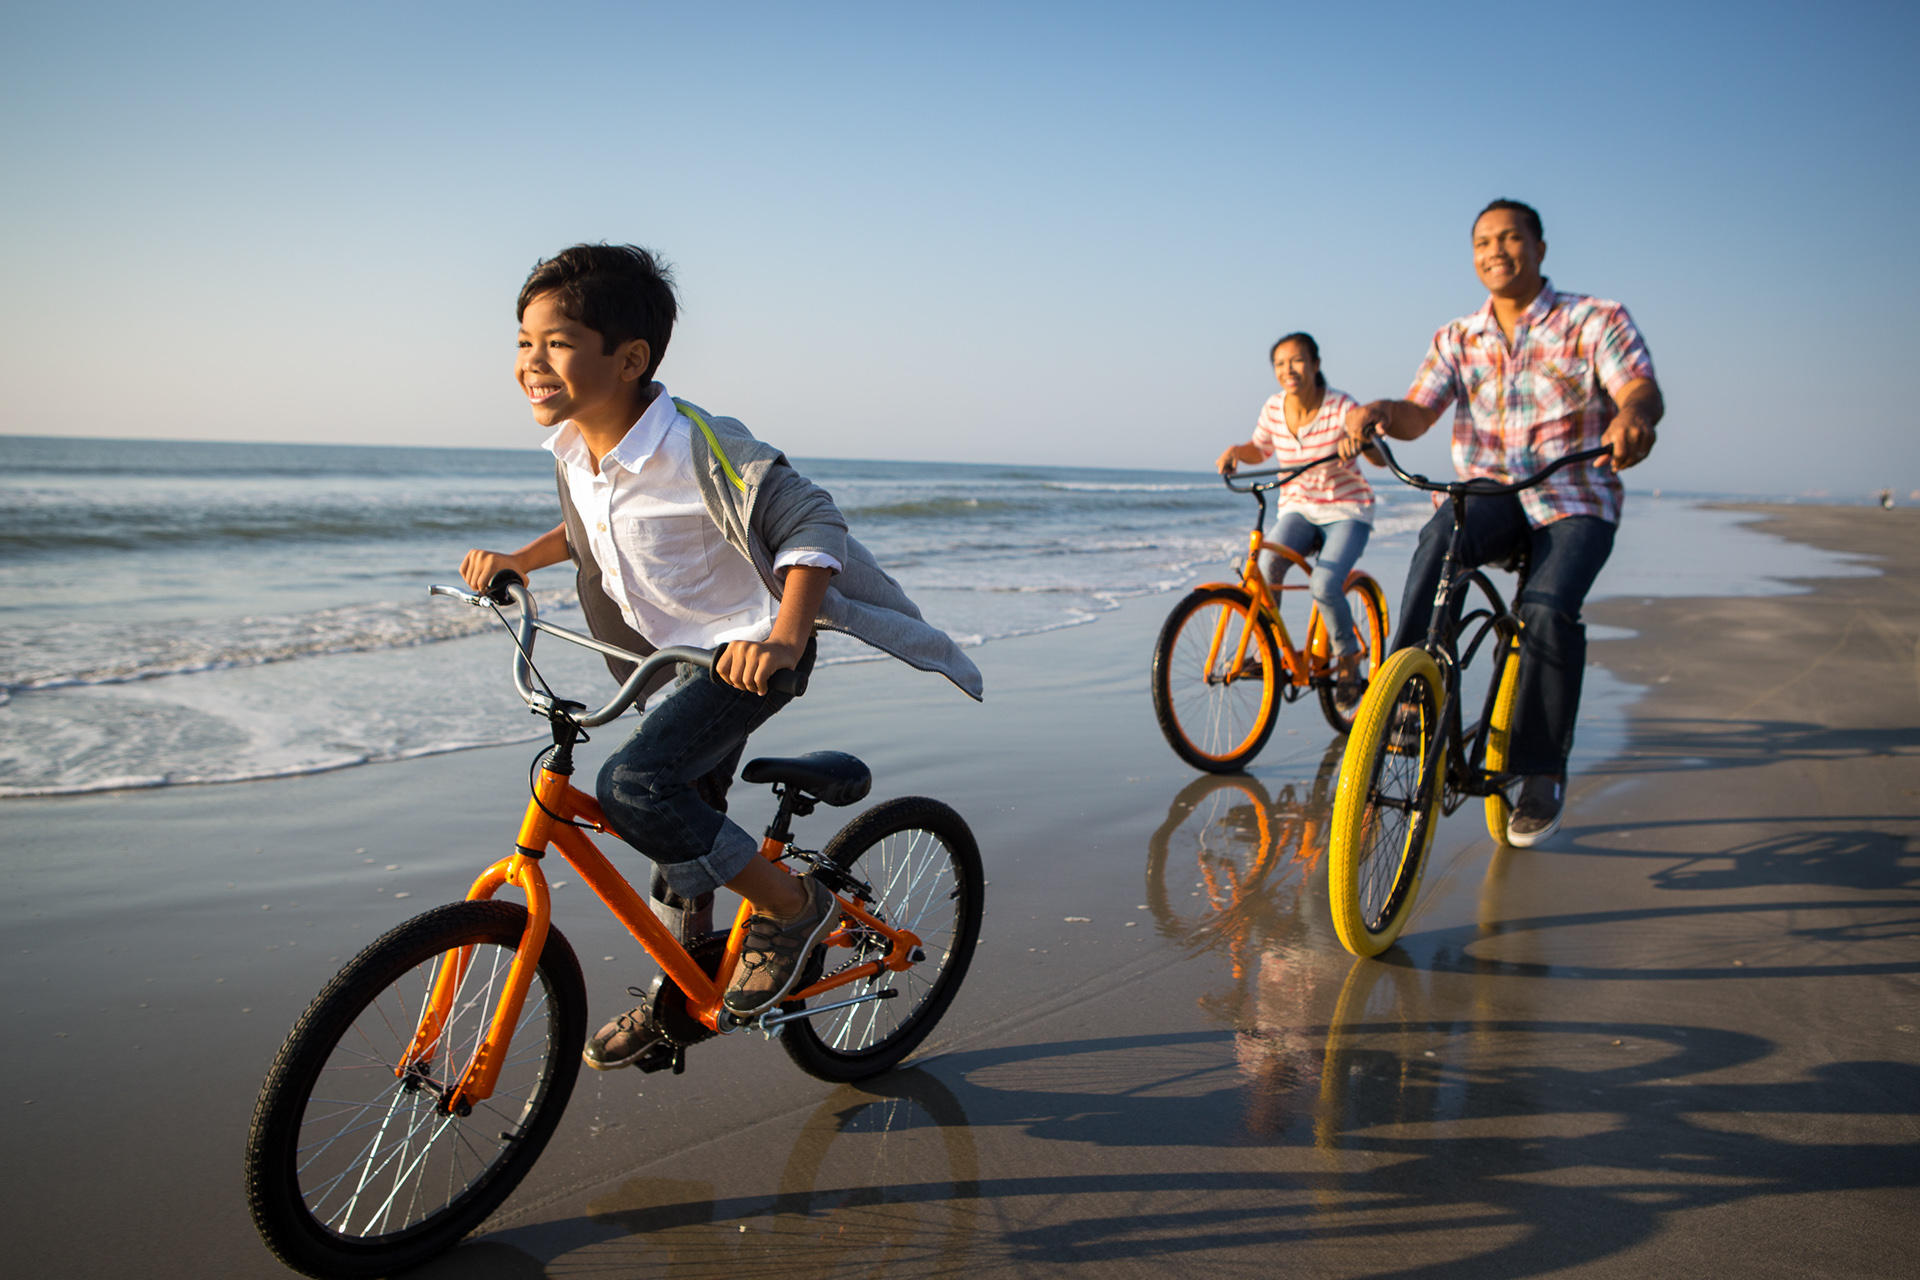 Велосемья. Семья на велосипедах. Велосипеды для всей семьи. Катание на велосипеде. Семейная прогулка на велосипедах.